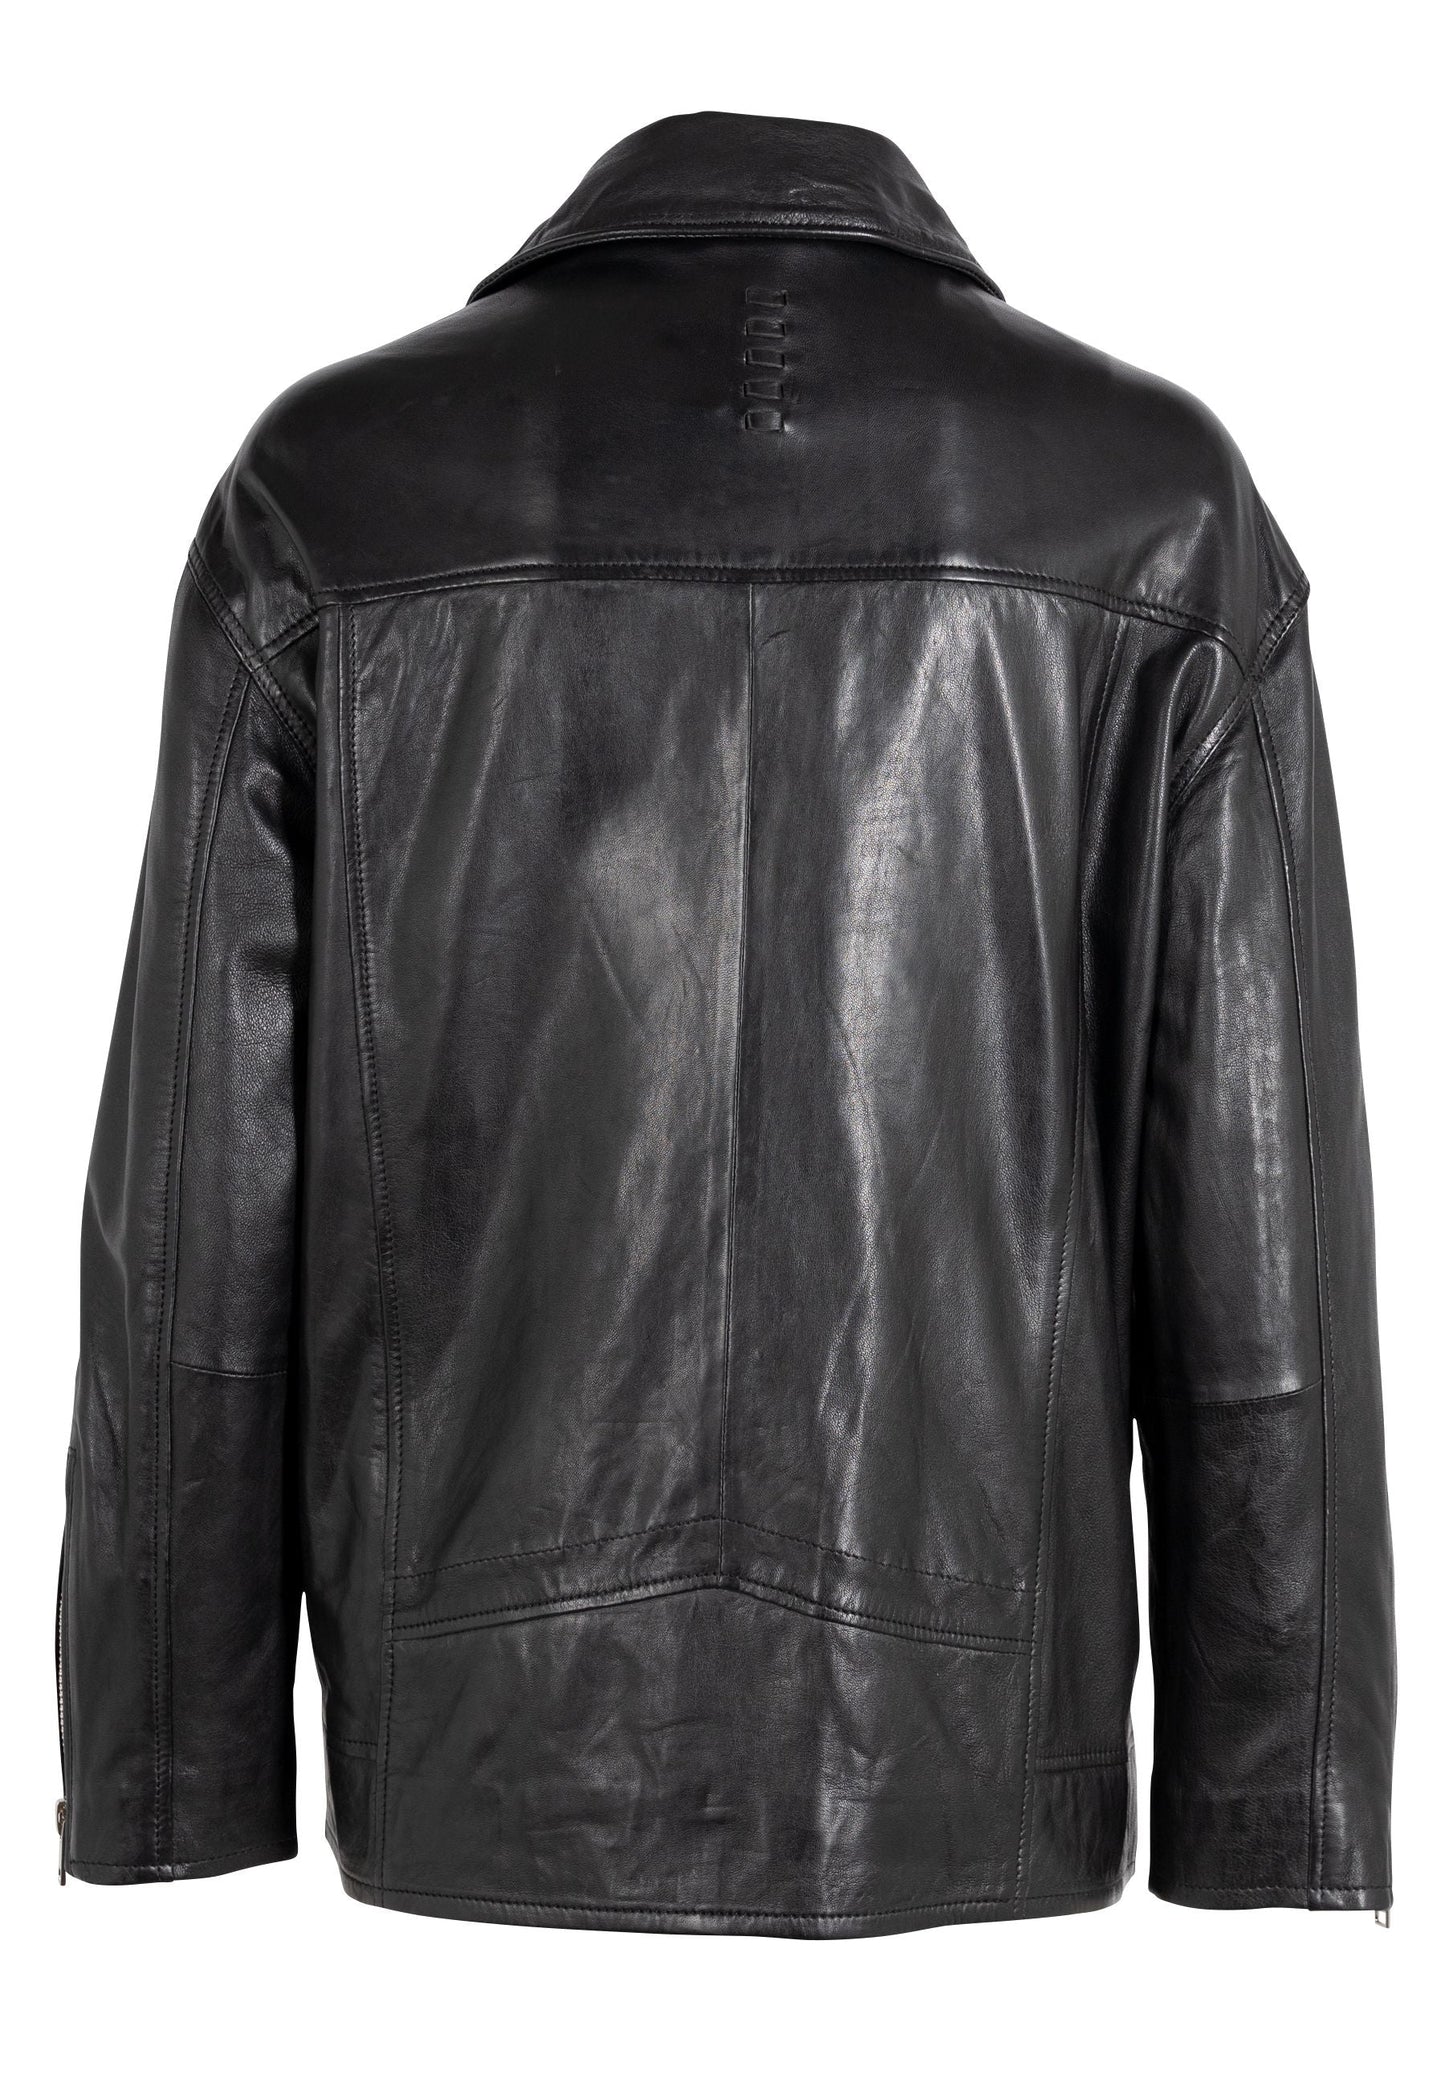 Yori Leather Jacket